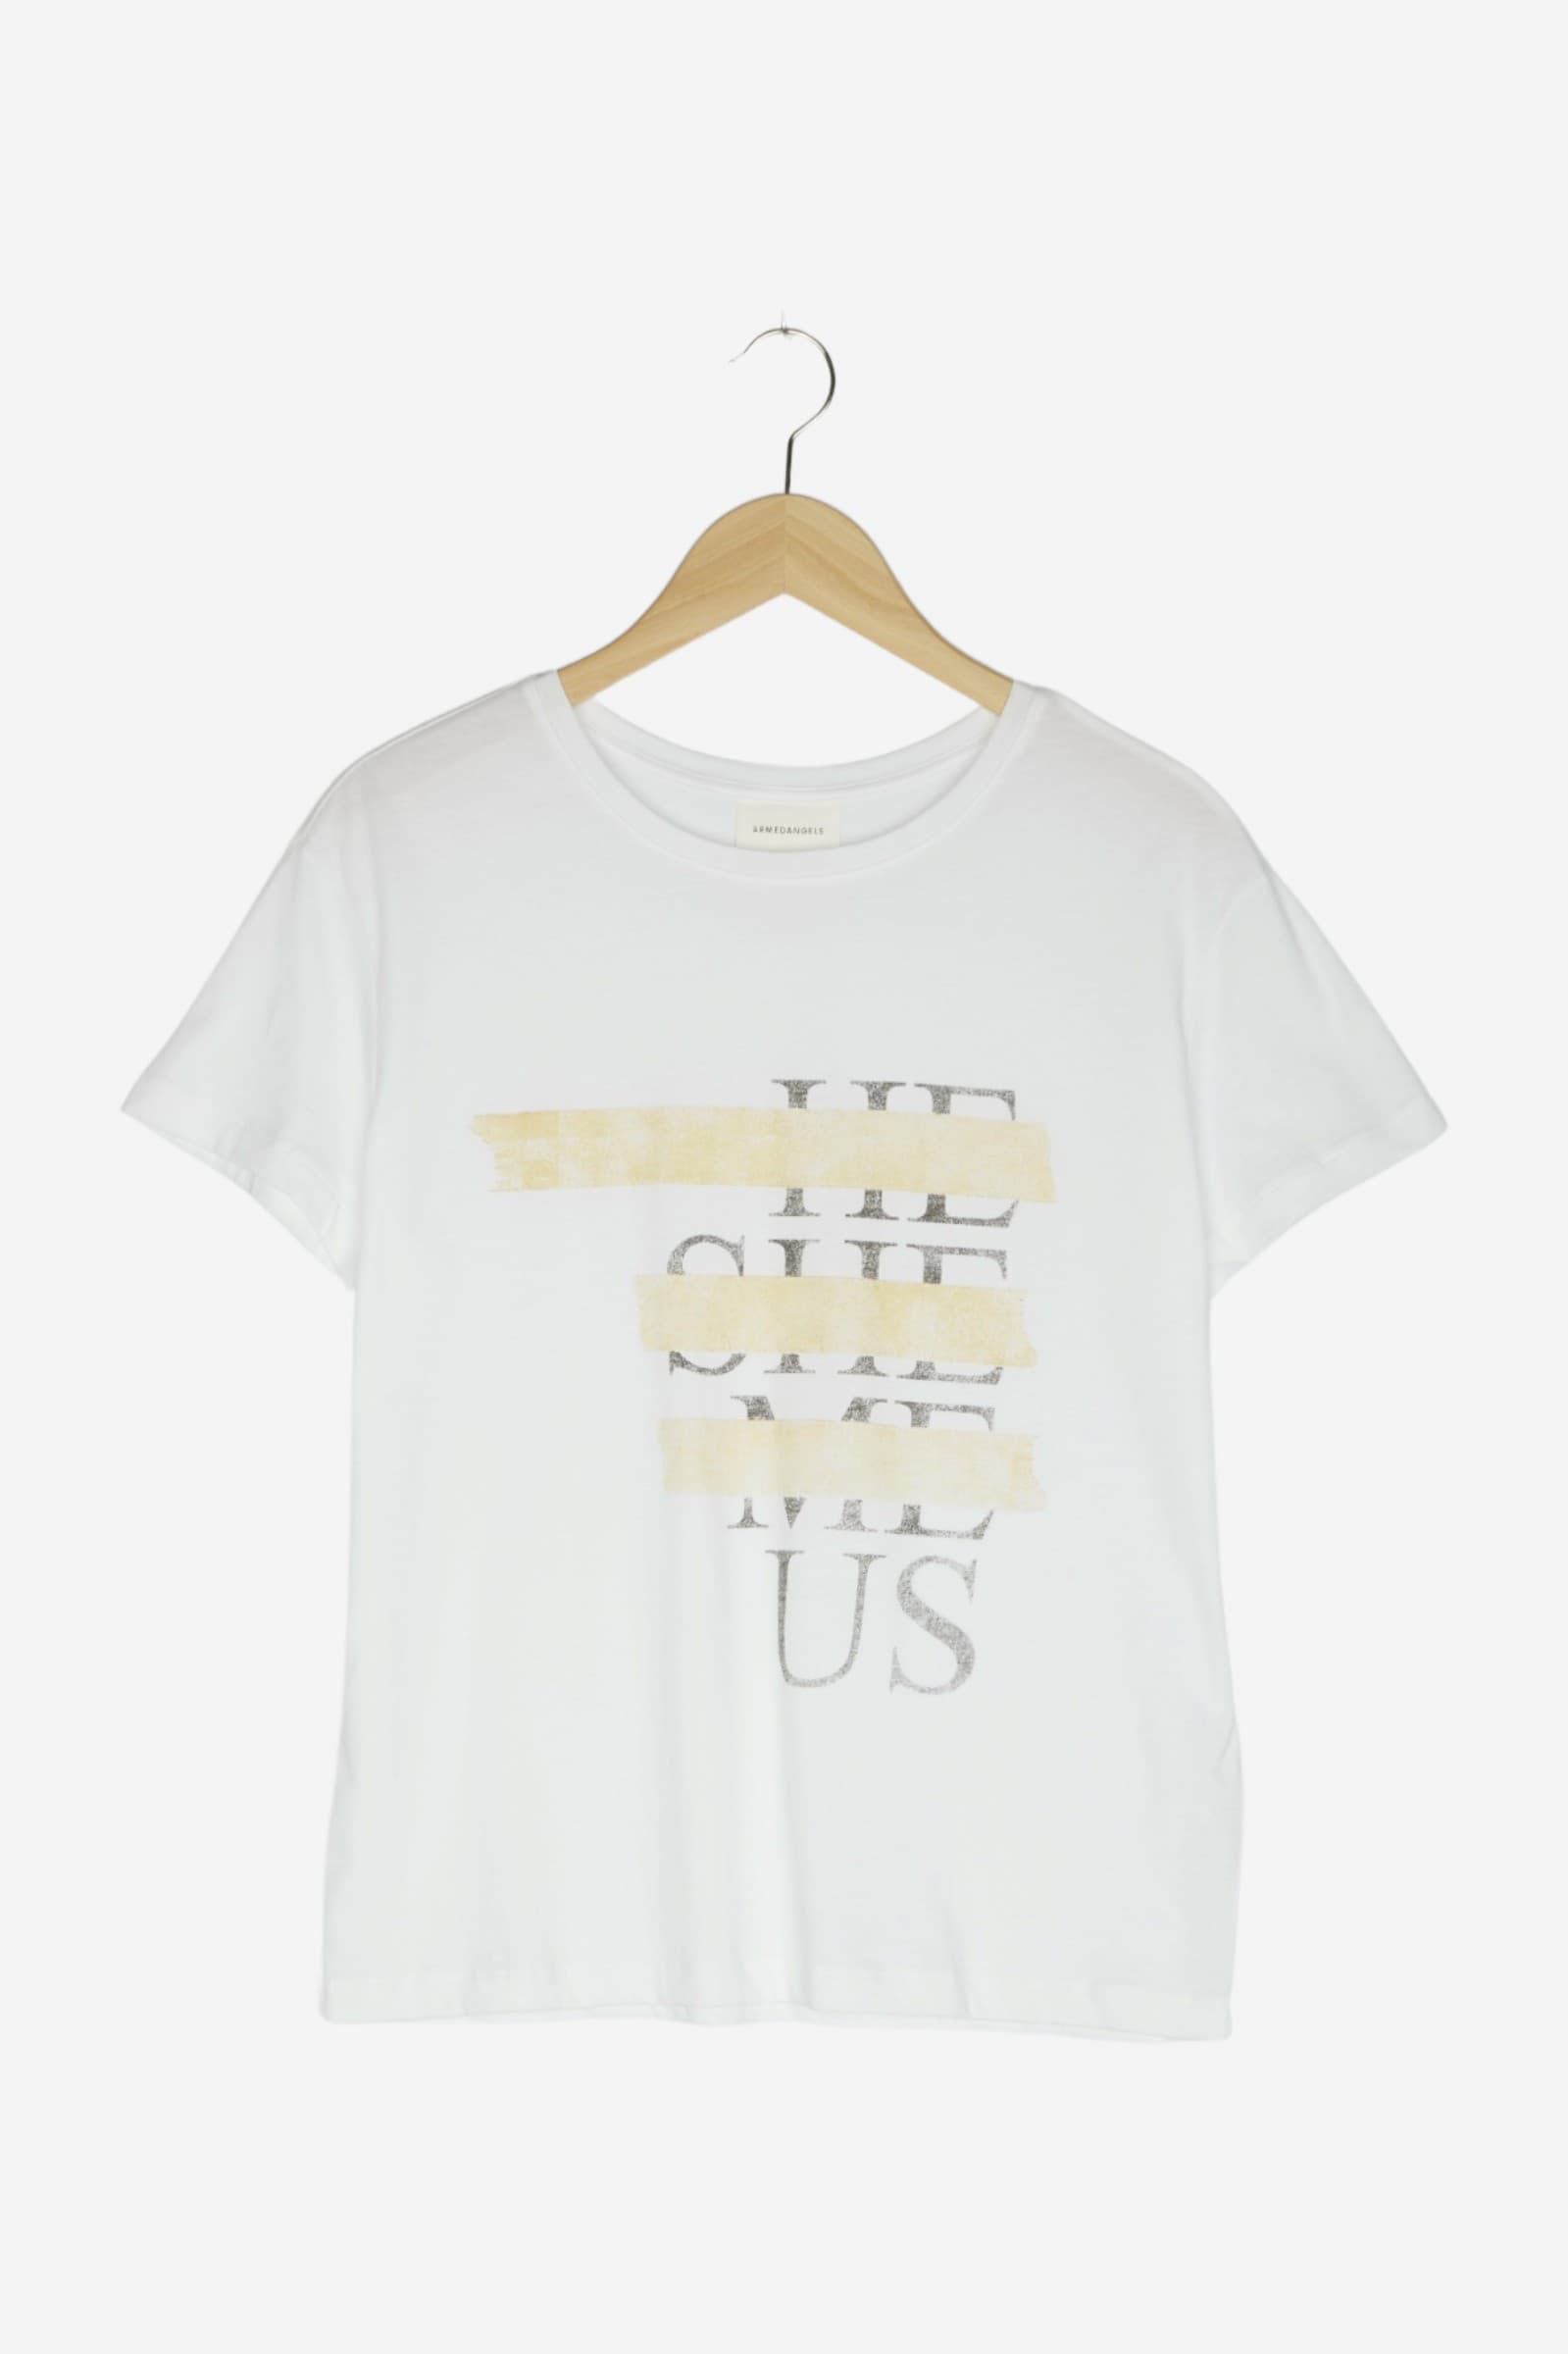 women Tops & T-Shirts Women / Shirts / T-Shirt w/ Print White